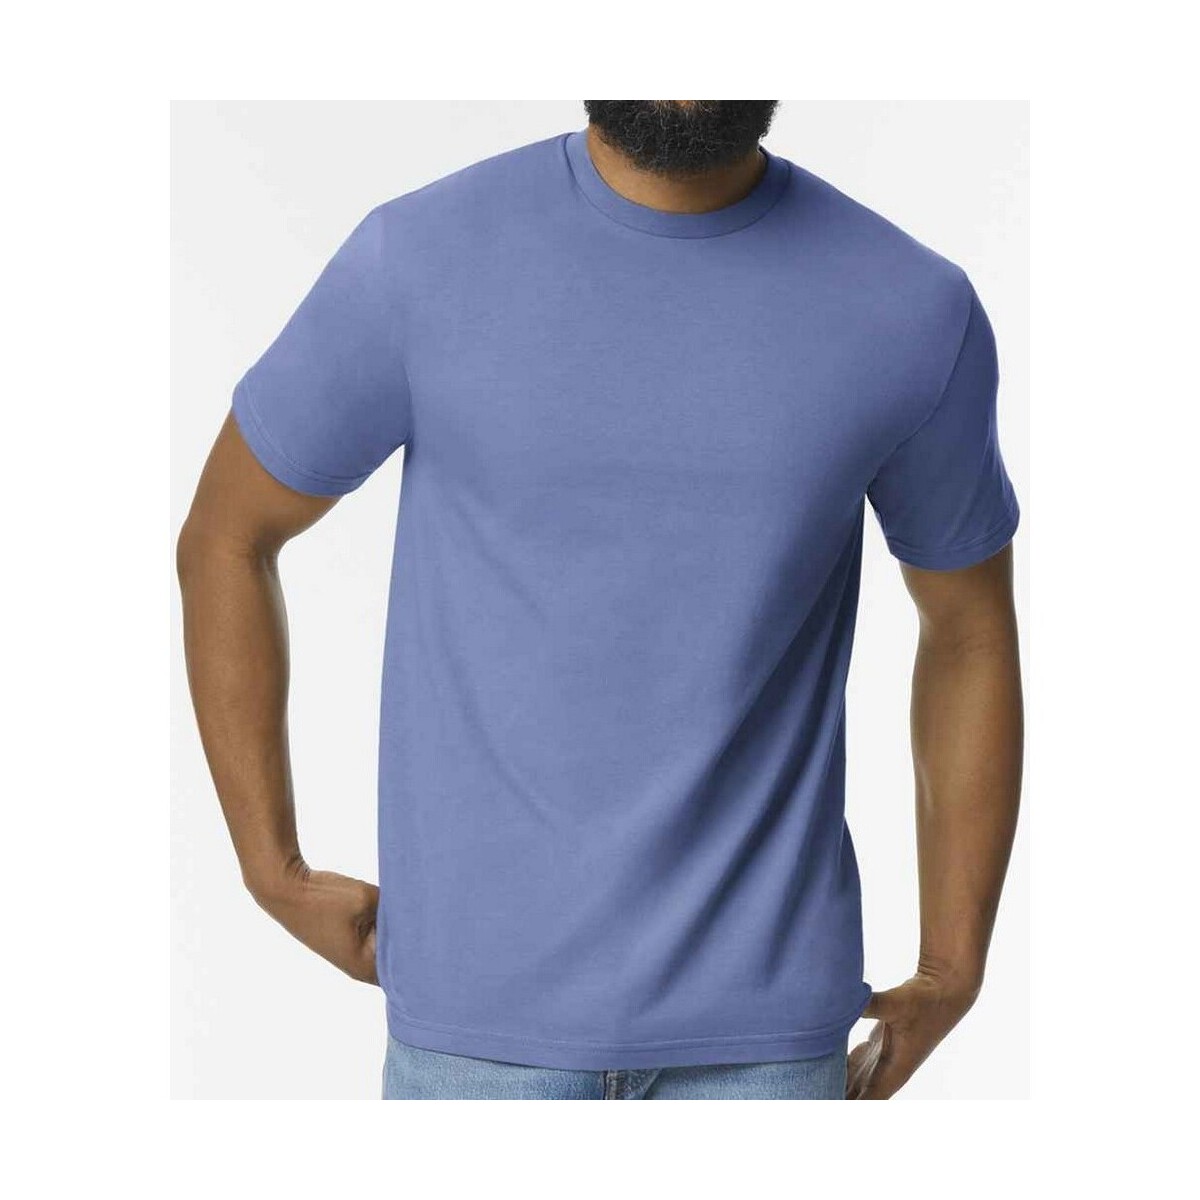 Vêtements Homme T-shirts manches longues Gildan GD15 Violet